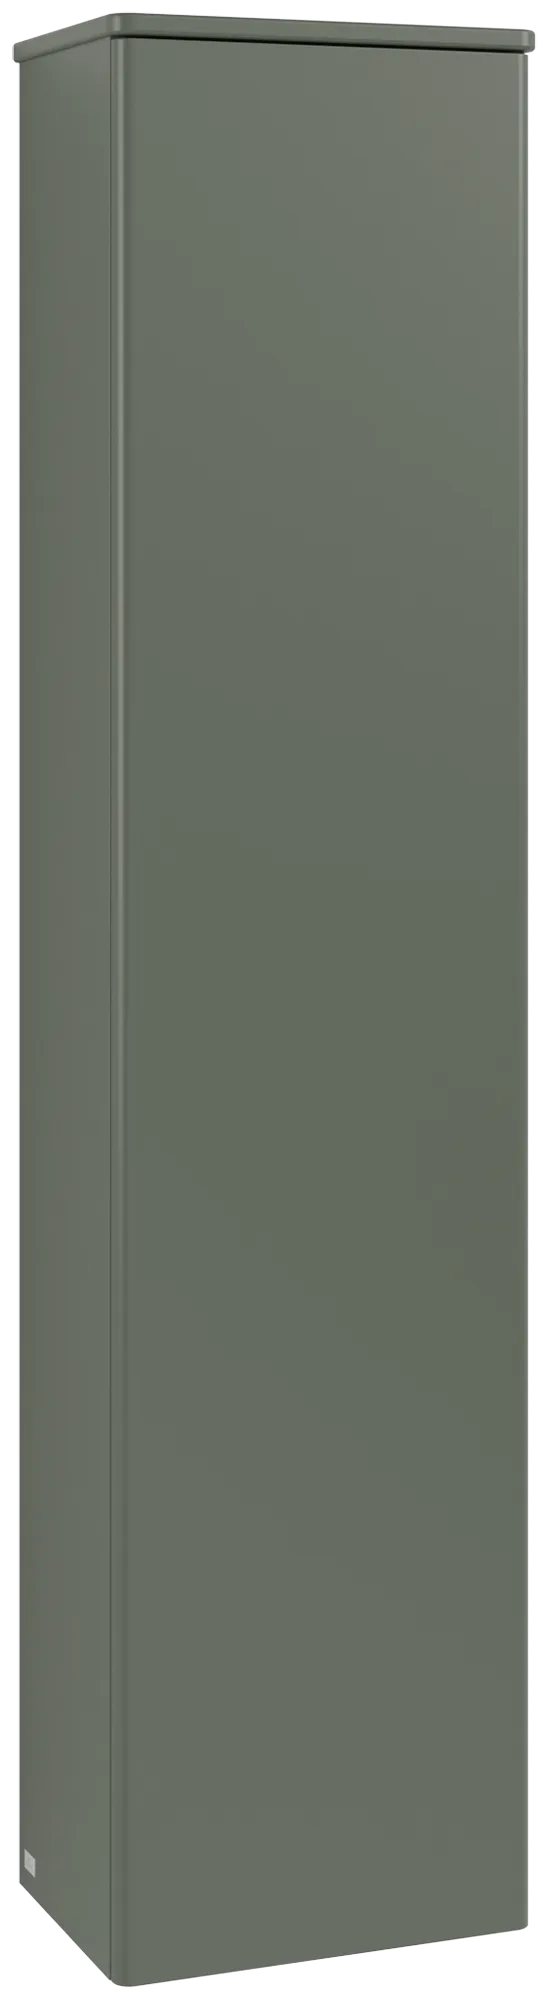 Bild von VILLEROY BOCH Antao Hochschrank, 1 Tür, 414 x 1719 x 287 mm, Front ohne Struktur, Leaf Green Matt Lacquer / Leaf Green Matt Lacquer #K46000HL